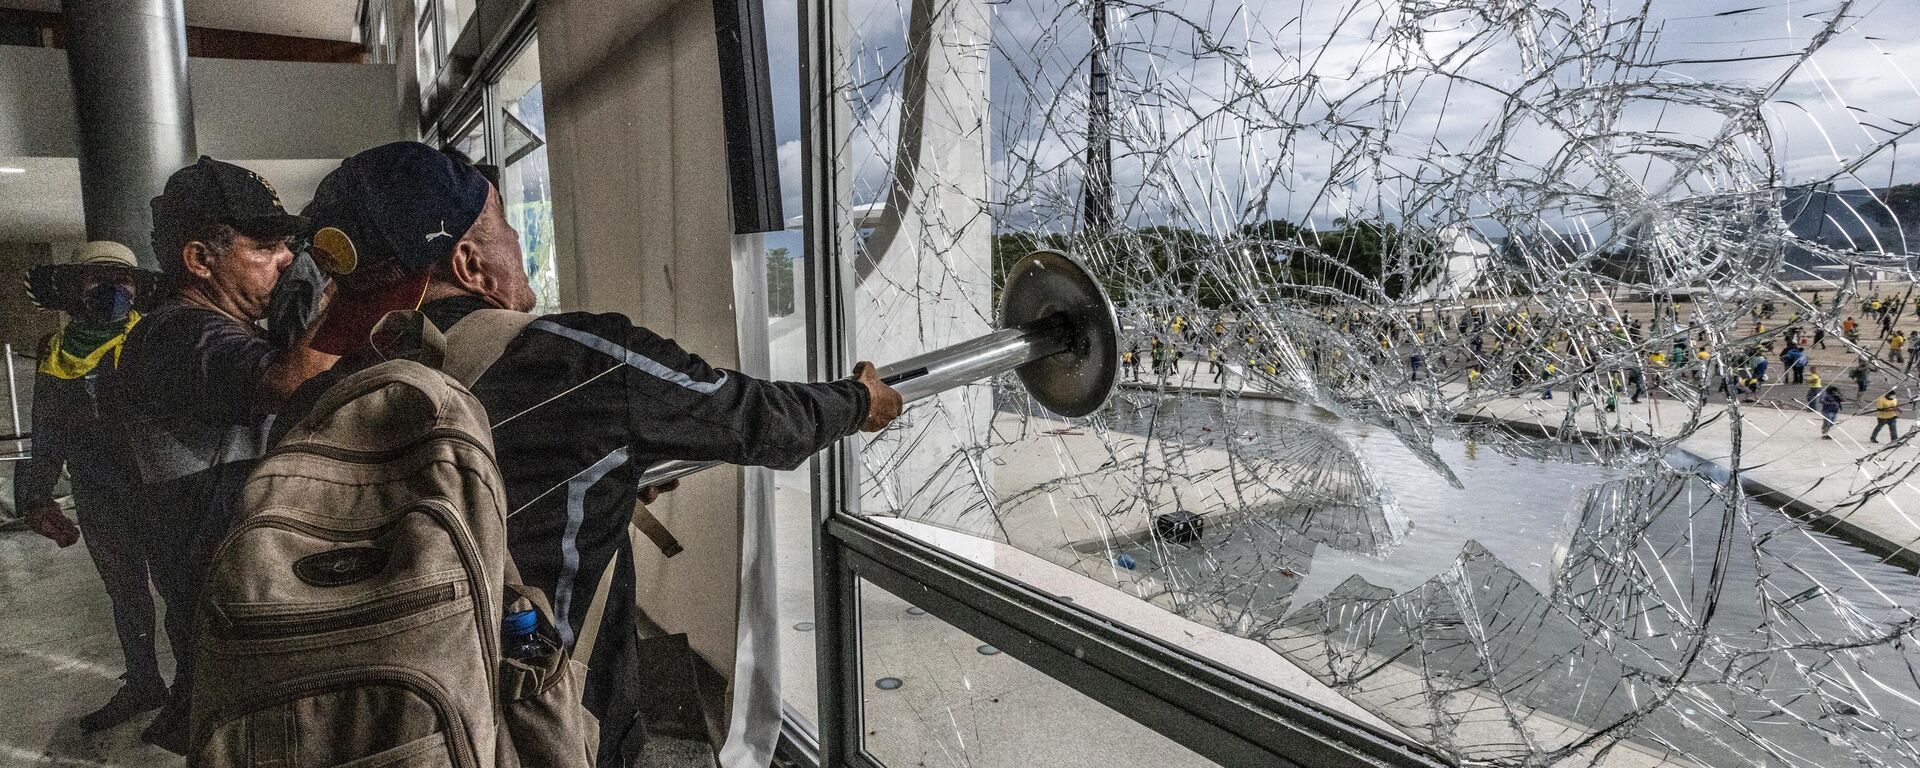 Homem quebra janela do Palácio do Planalto durante manifestação em Brasília (DF), em 8 de janeiro de 2023 - Sputnik Brasil, 1920, 08.01.2023